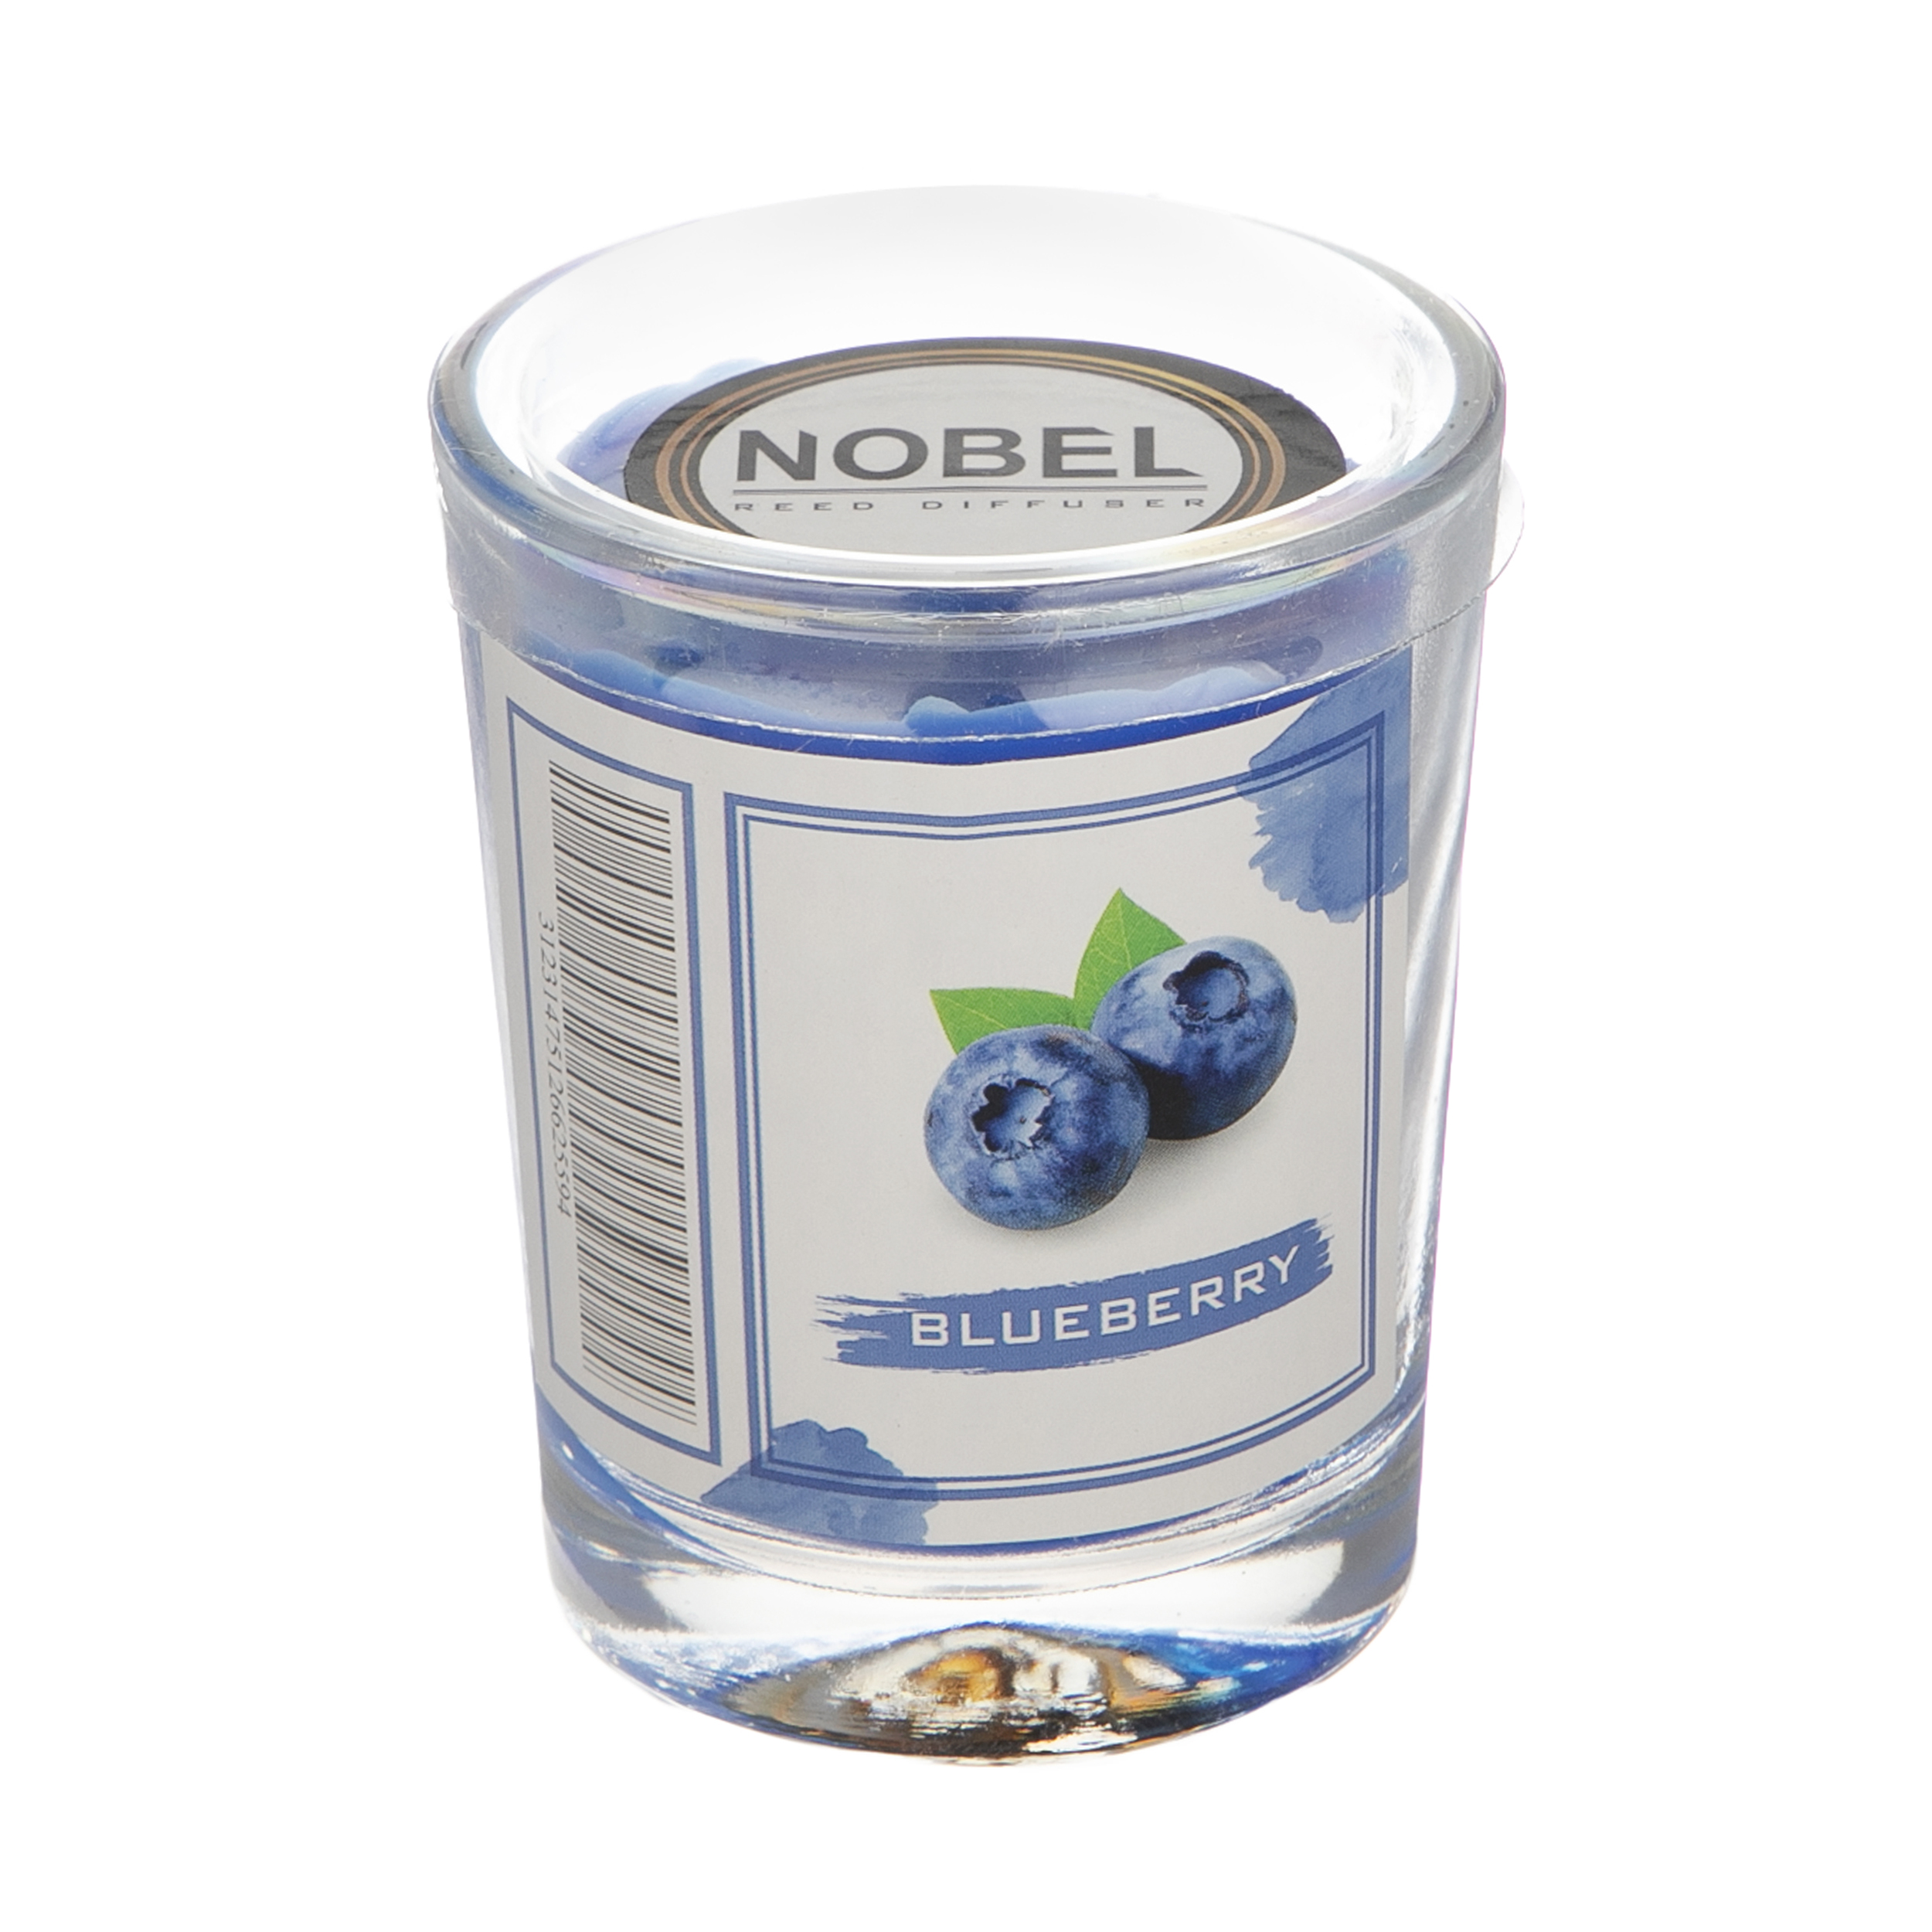 شمع لیوانی نوبل مدل Blueberry